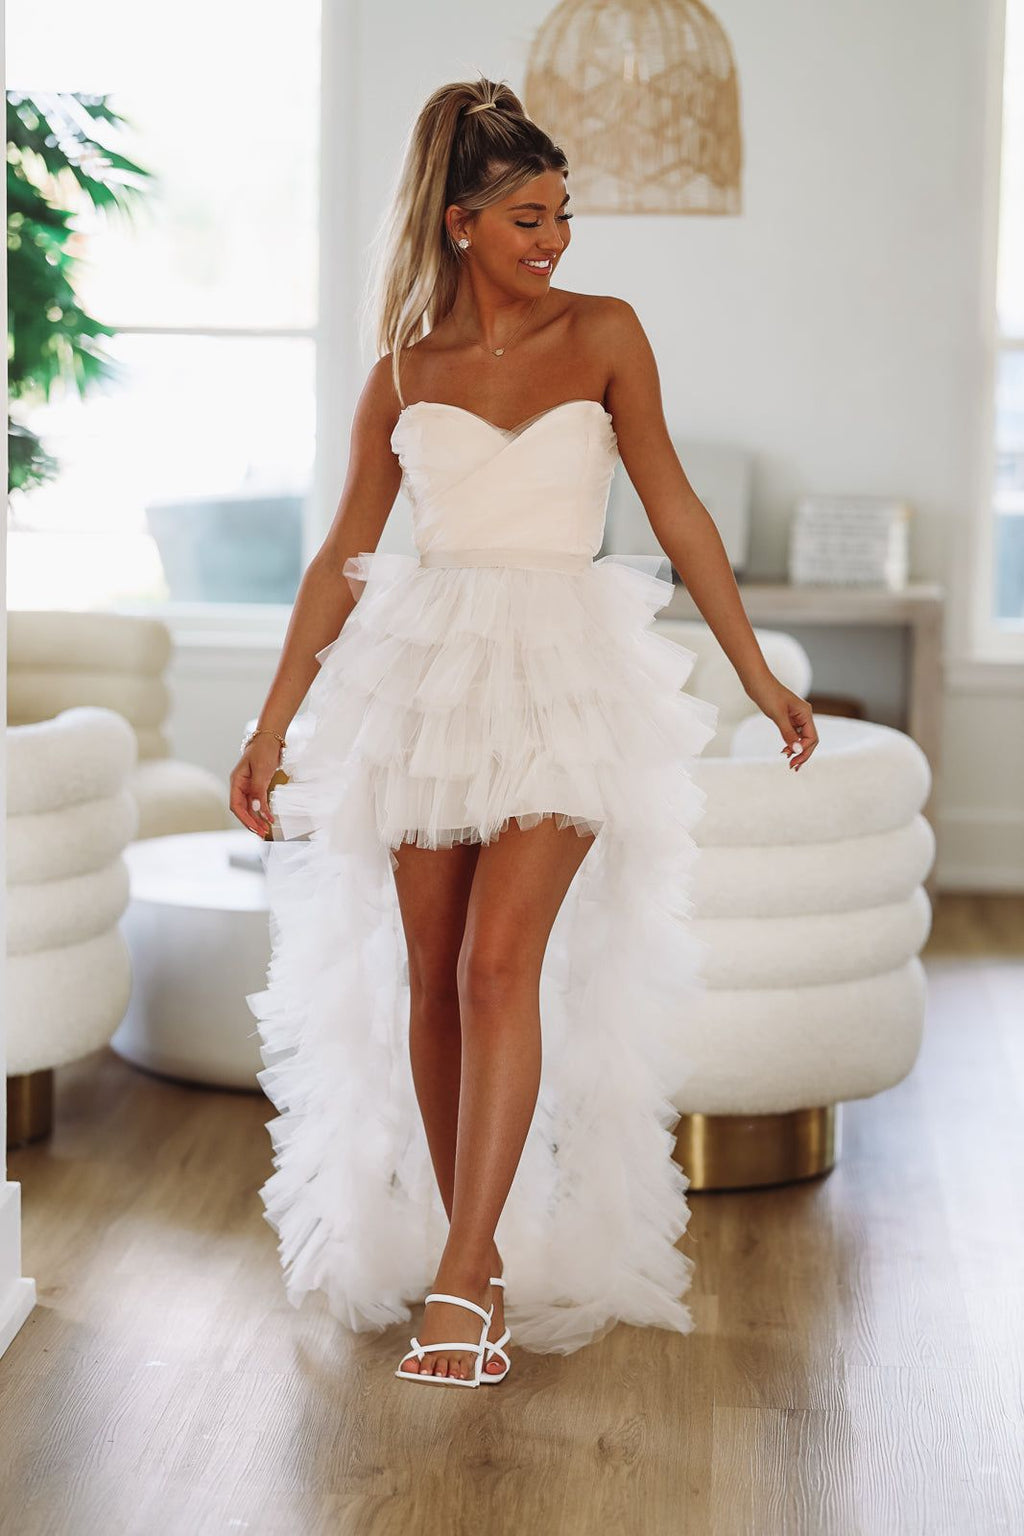 white dress for bridal shower